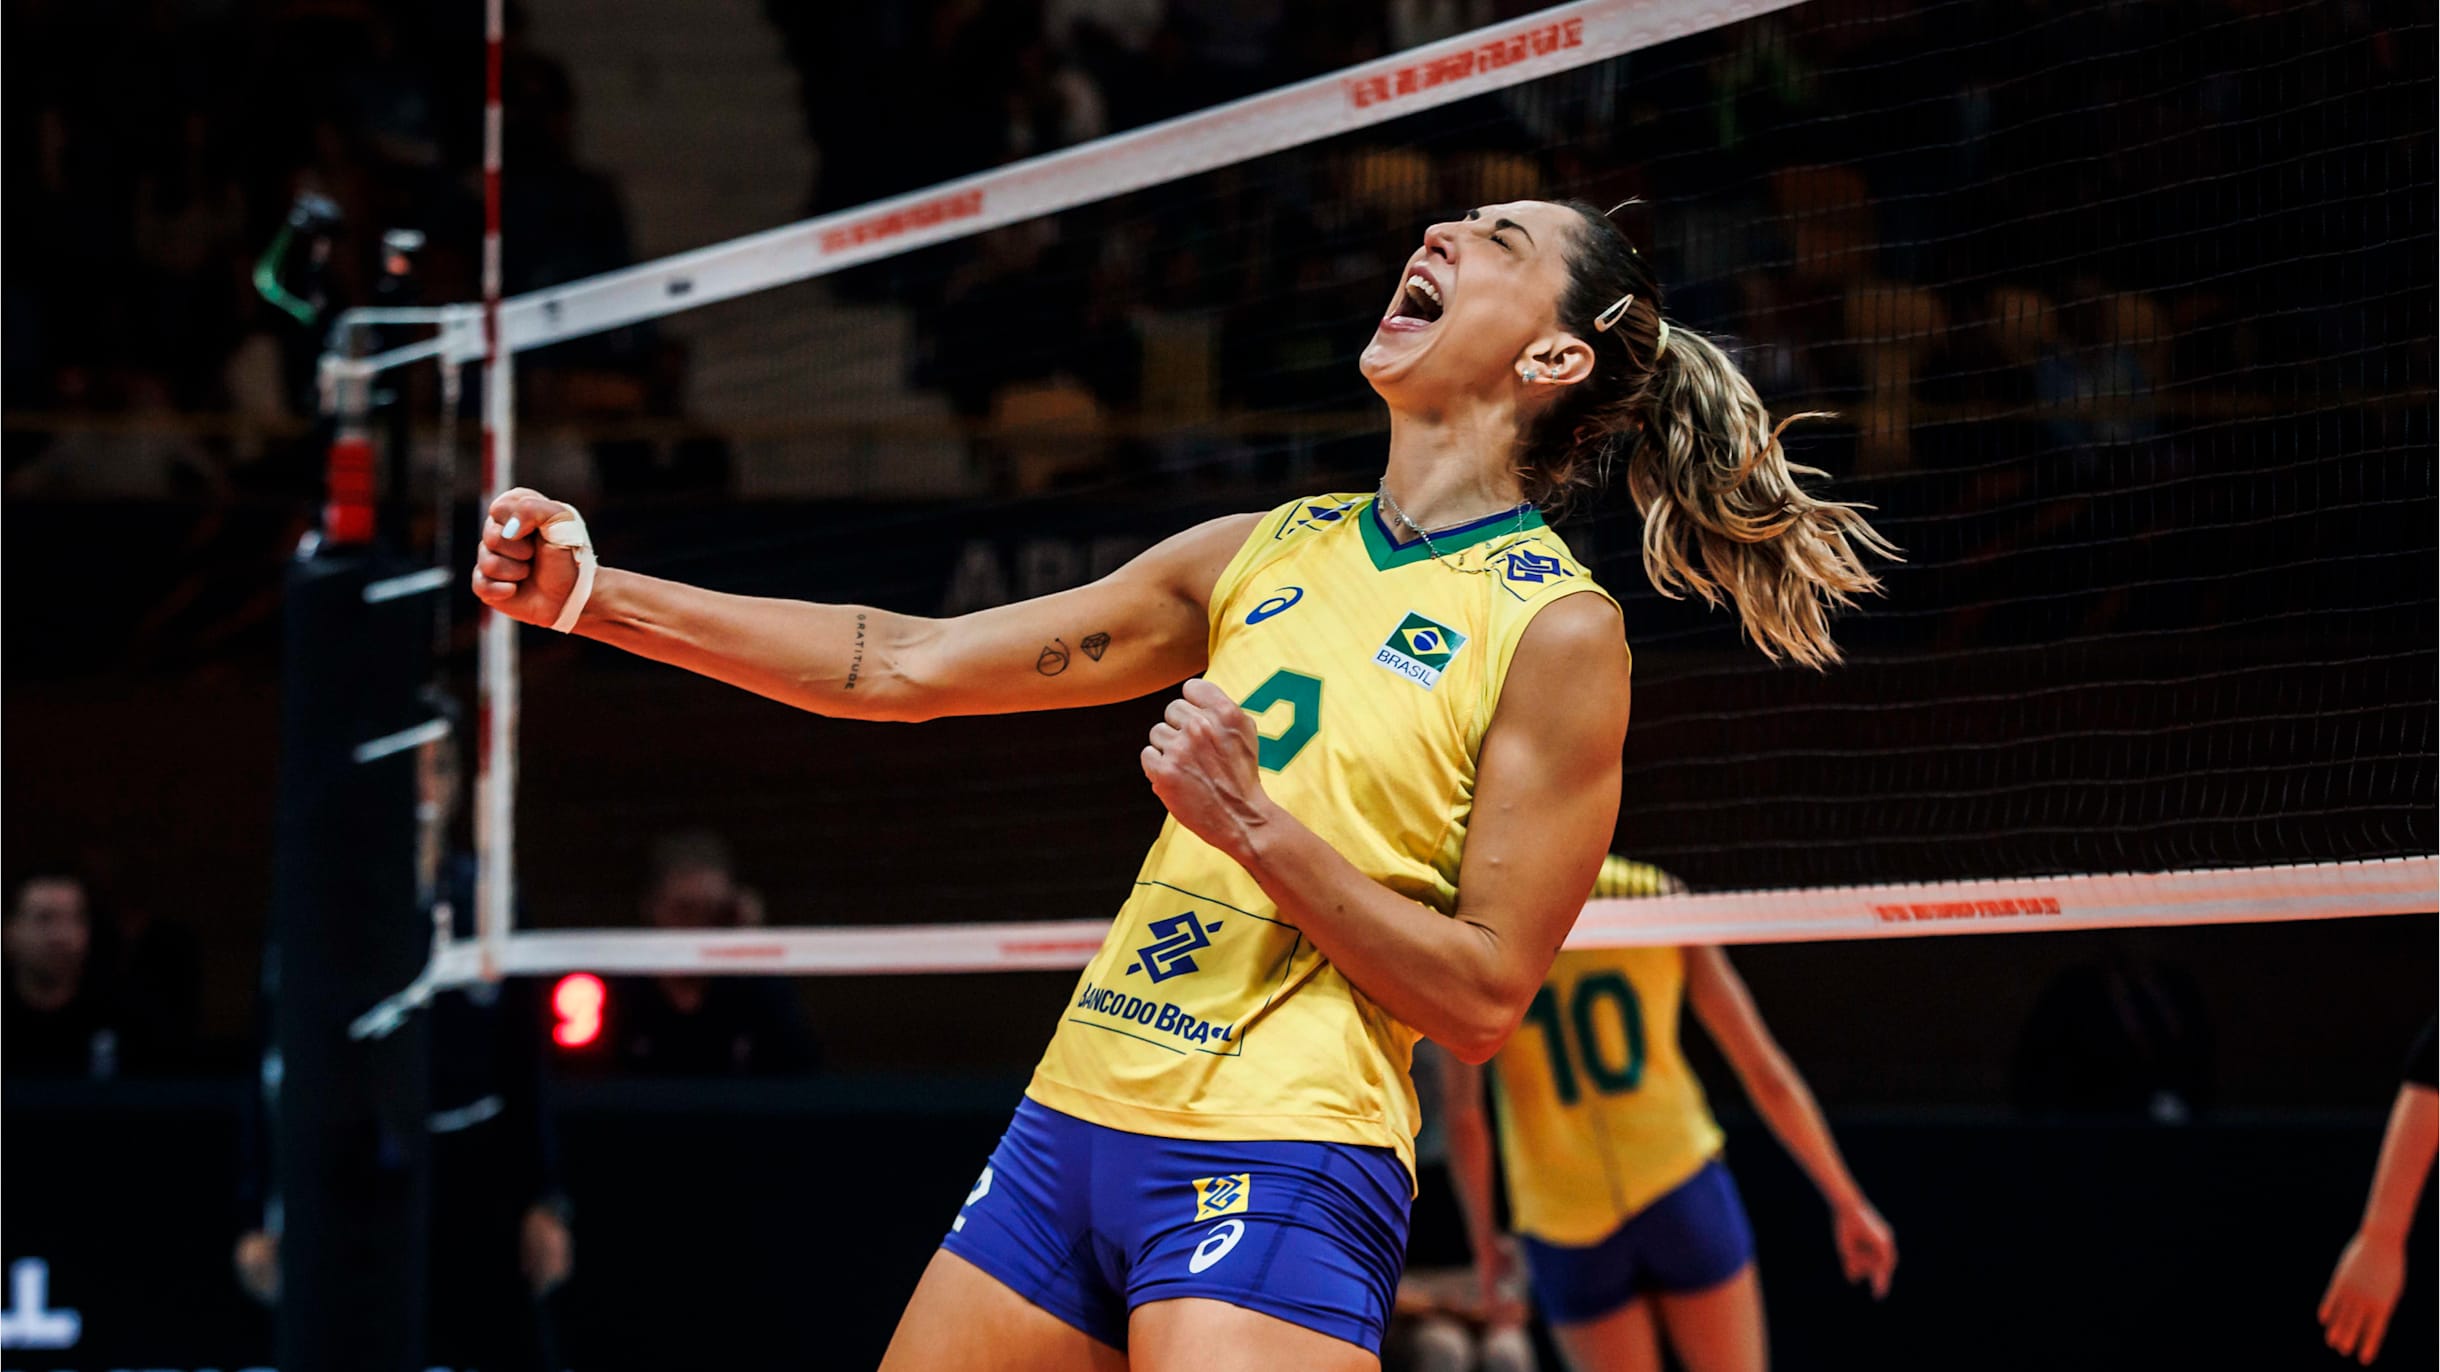 CAMPEONATO MUNDIAL DE VÔLEI FEMININO: Veja quando será a estreia do Brasil  e tabela de jogos no Mundial de Vôlei